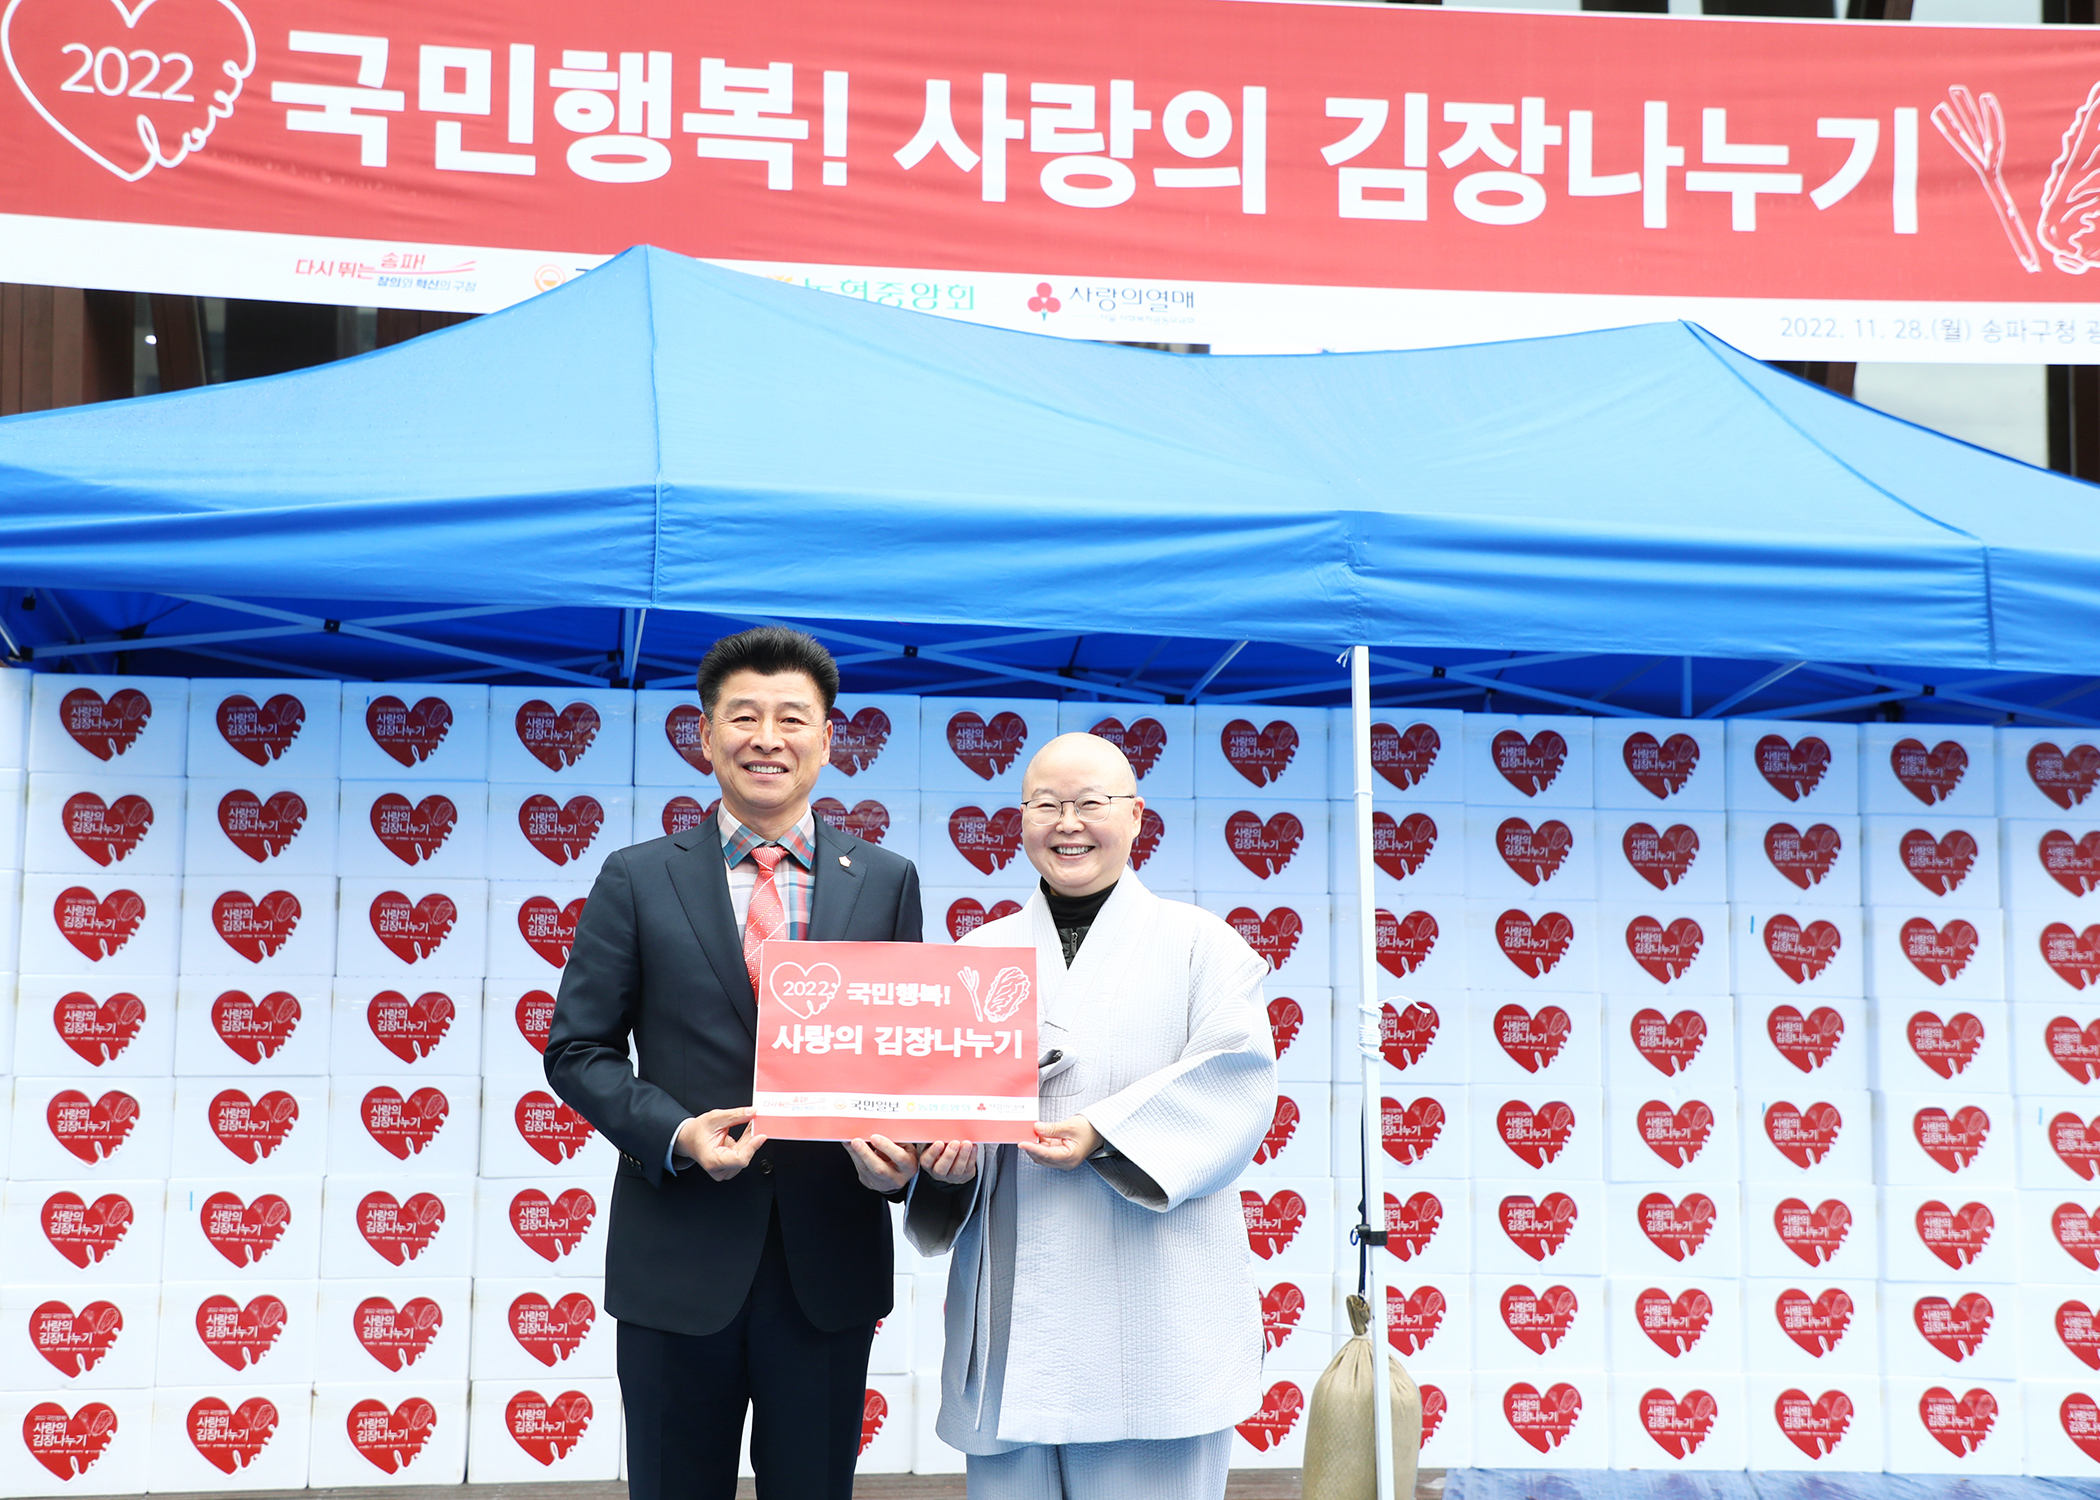 2022 국민행복 사랑의 김장나누기 - 2